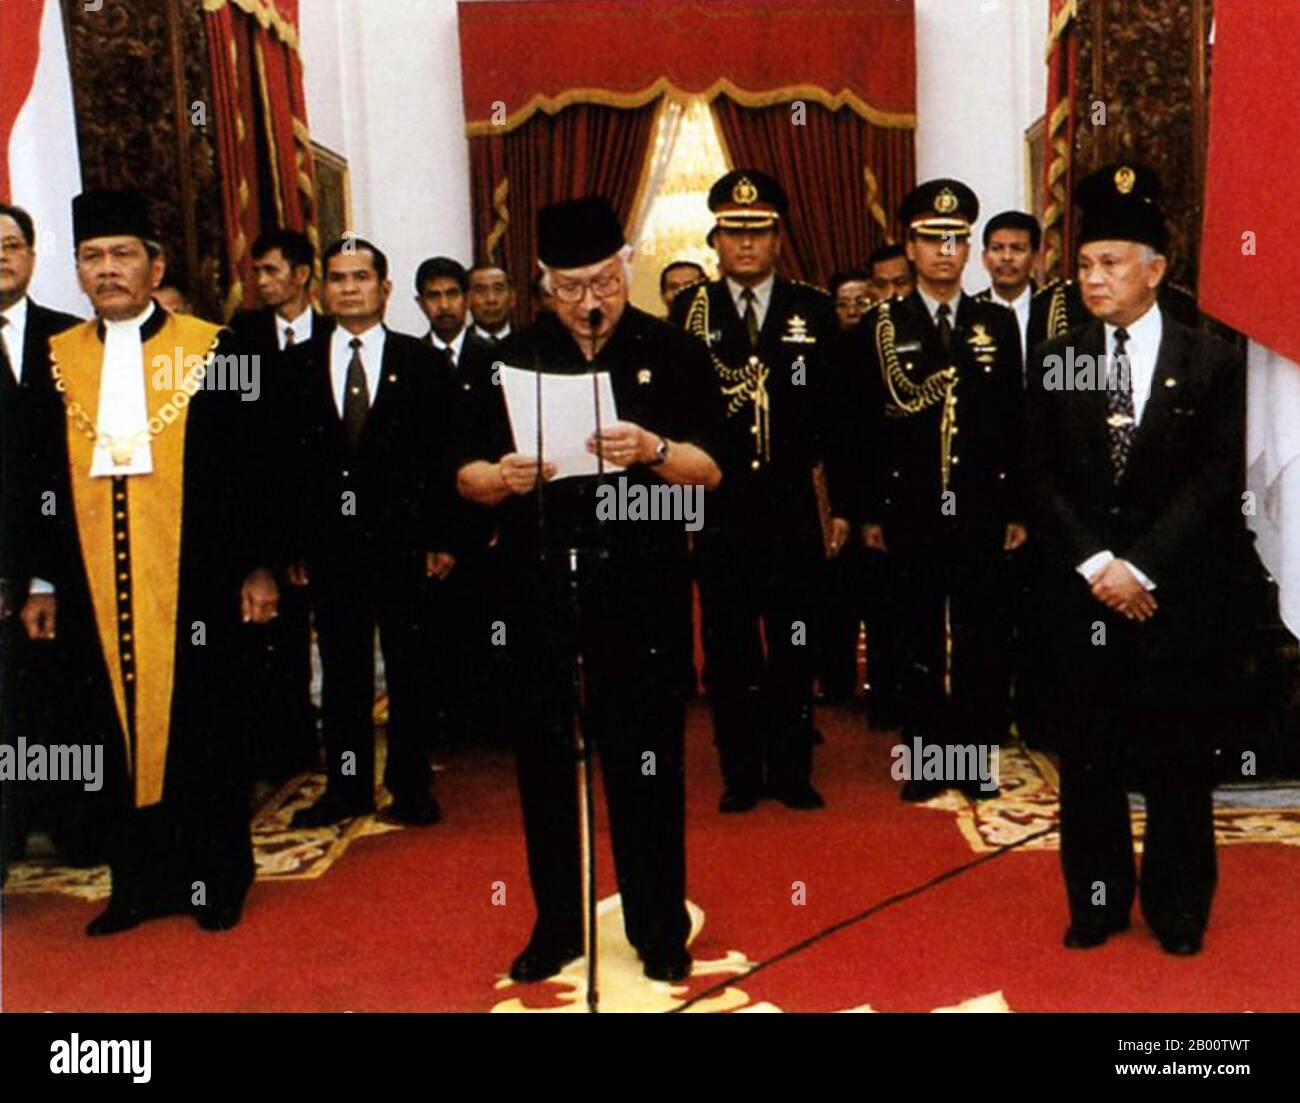 Indonesia: Suharto (1921-2008), secondo presidente dell'Indonesia (1967-1998). Rassegnazione, Palazzo Merdeka, 21 maggio 1998. Suharto (8 giugno 1921 – 27 gennaio 2008) è stato il secondo presidente dell'Indonesia, che ha avuto la carica per quasi 32 anni, dal 1967 fino alle sue dimissioni nel 1998. Nella letteratura e nei media indonesiani, viene spesso chiamato Pak HARto. Figlio dei carestieri di Yogyakarta, Suharto si unì alla lotta per l'indipendenza dagli olandesi come giovane. Salendo al rango di maggiore generale nell'esercito indonesiano, Suharto contribuì a condurre una purga anti-comunista nel 1965. Foto Stock